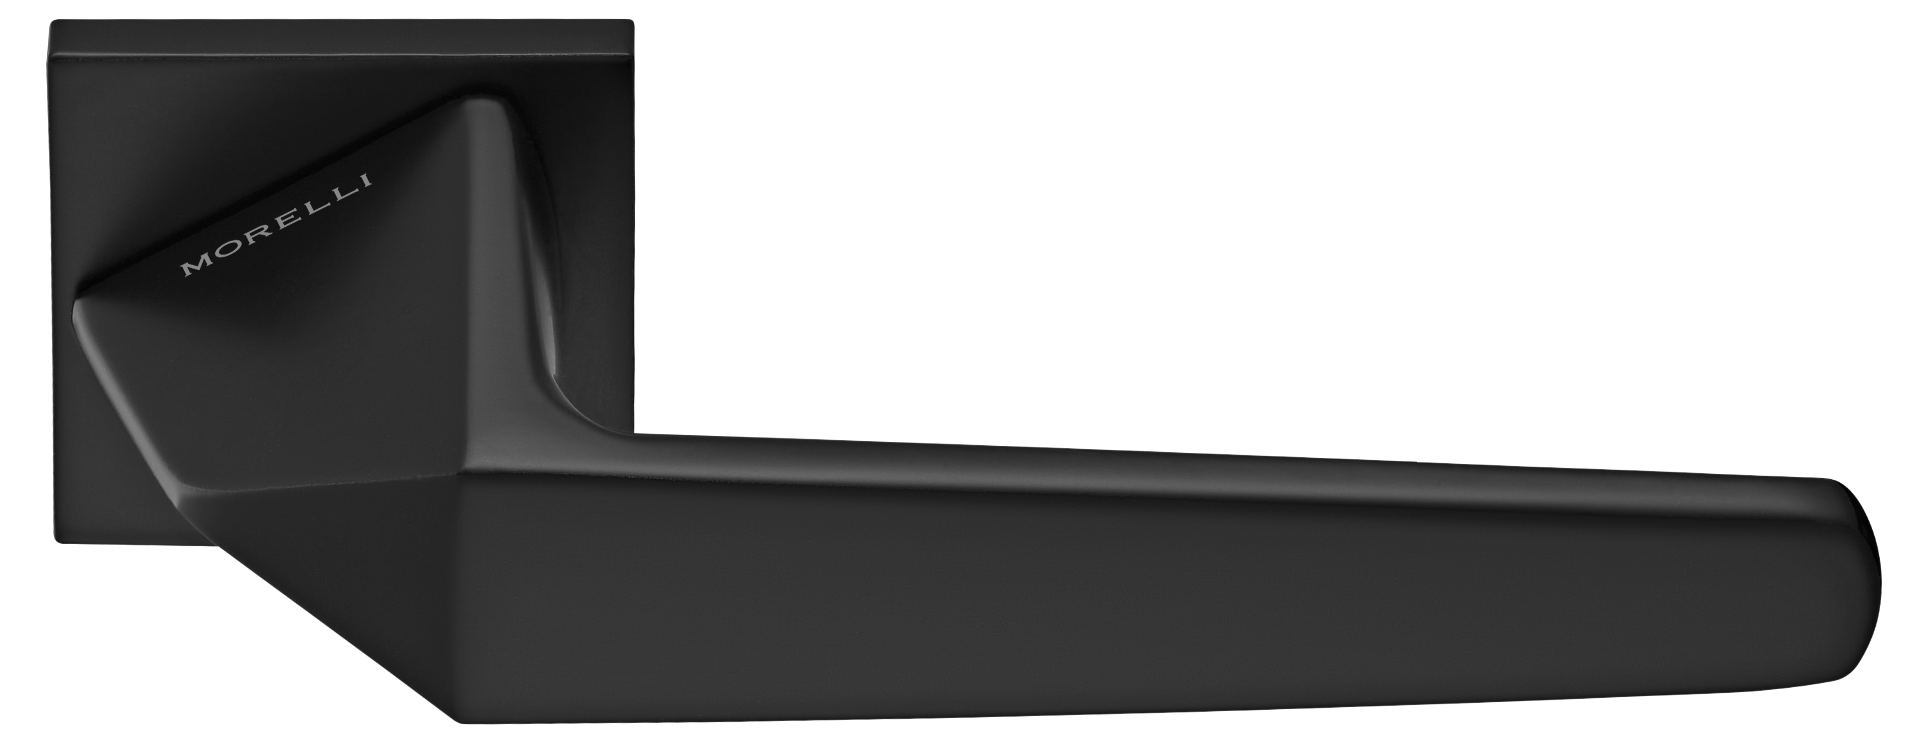 SOUK ручка дверная на квадратной розетке 6 мм, MH-55-S6 BL, цвет - черный фото купить Минск